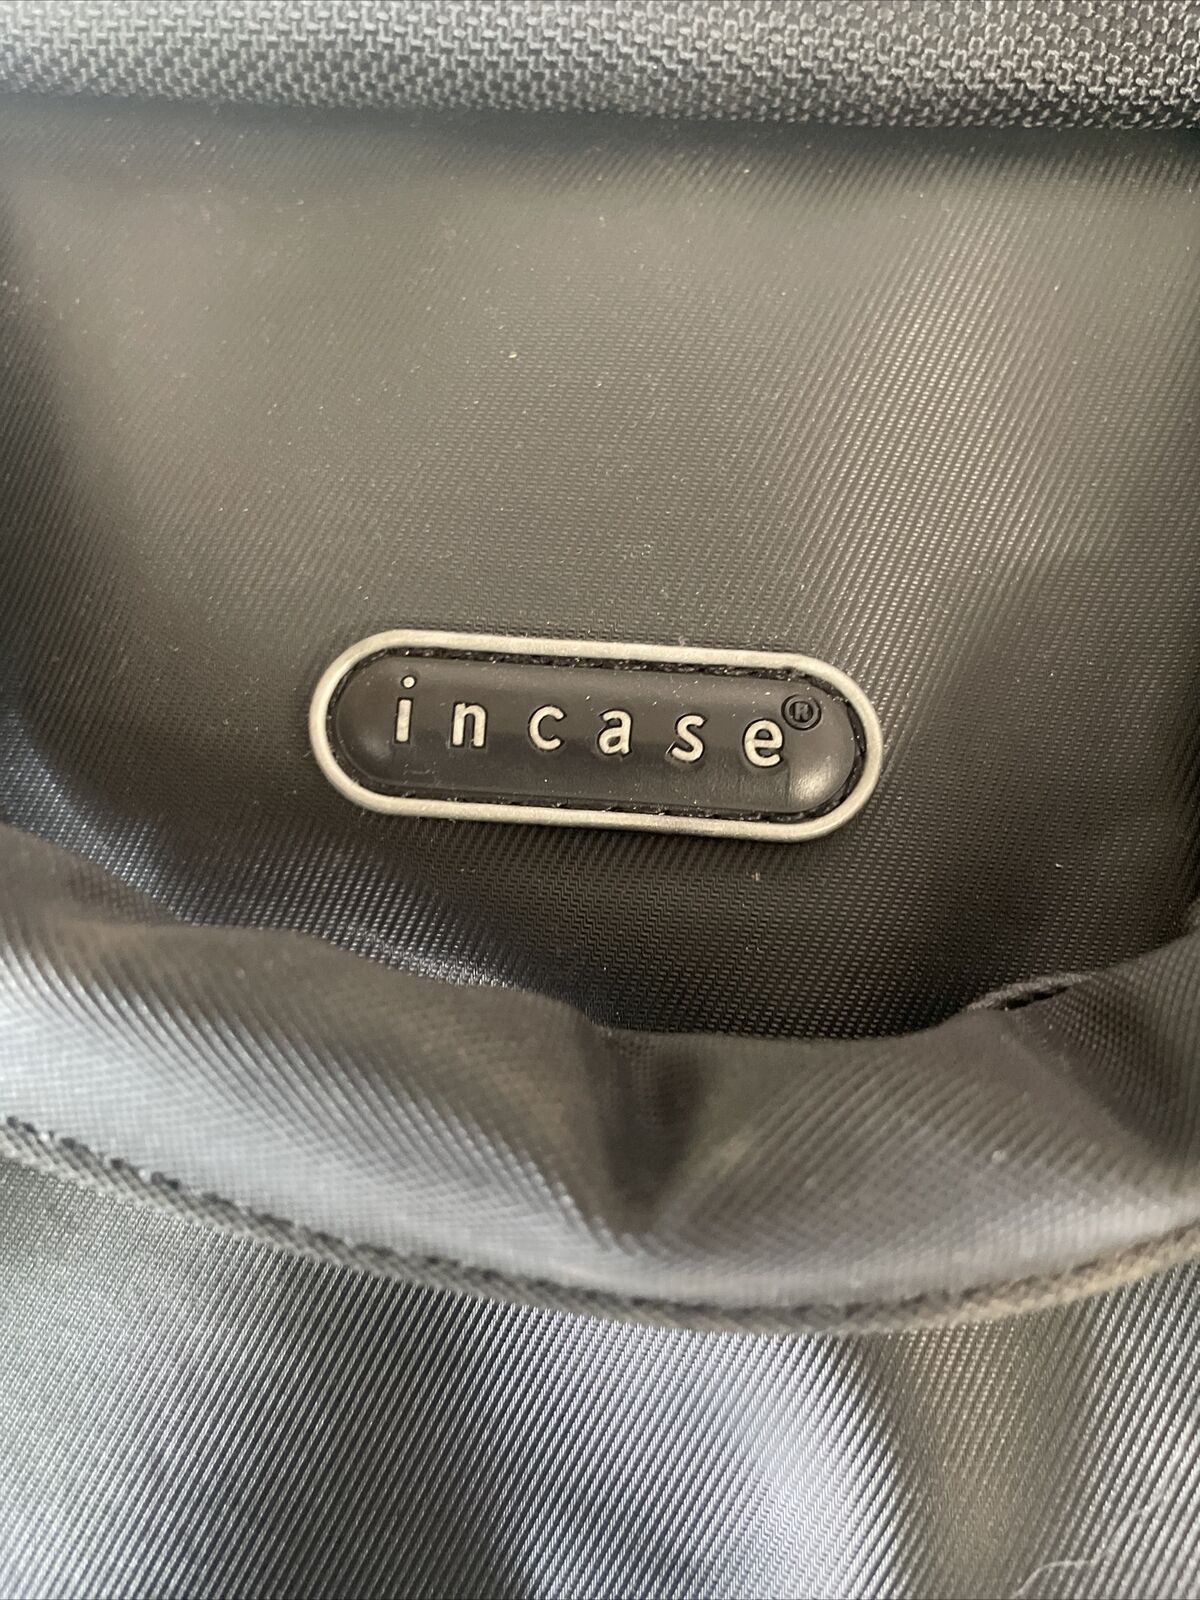 Incase Notebook Laptop Computer Black Bag Shoulder Carrying Messenger 15.5x 13